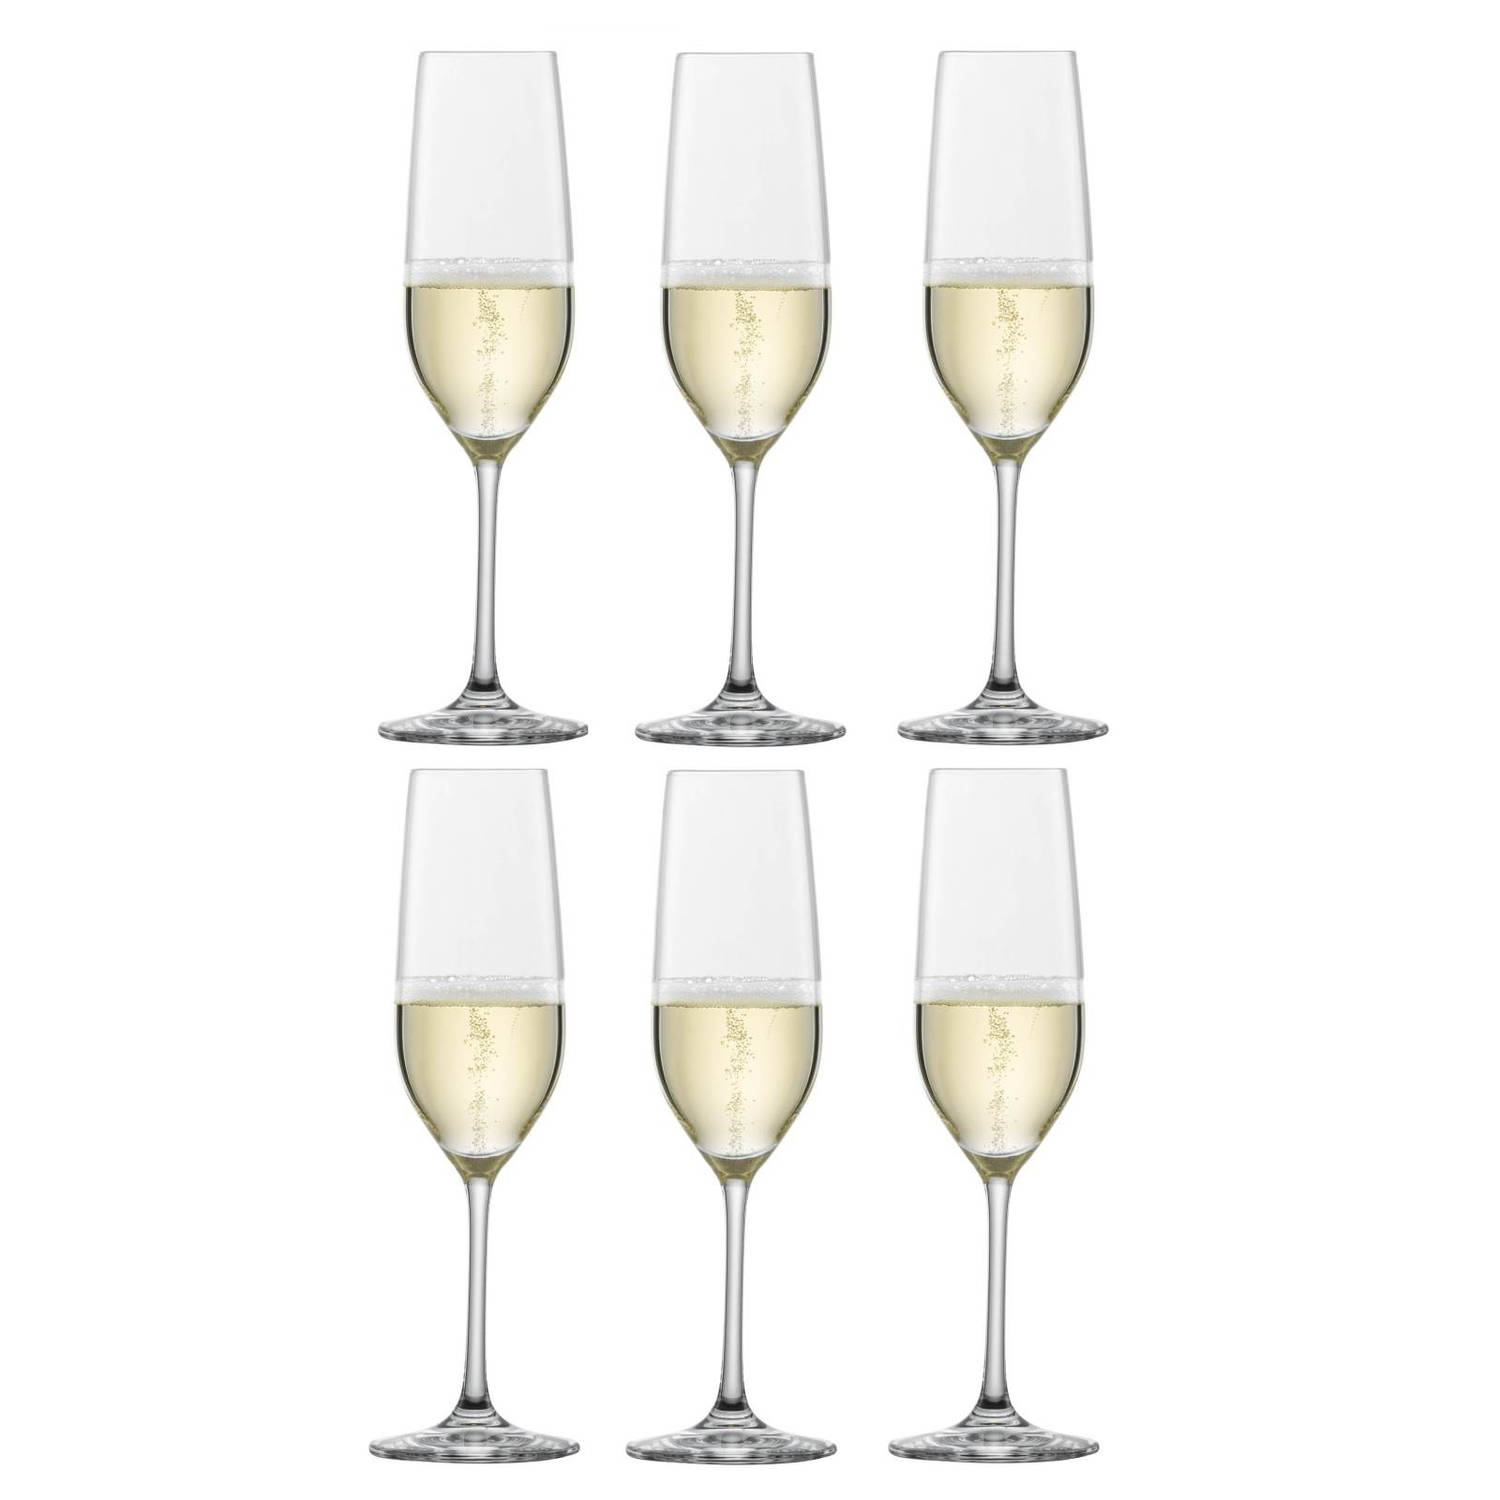 Schott Zwiesel Champagneglazen Vina 230 ml - 6 stuks